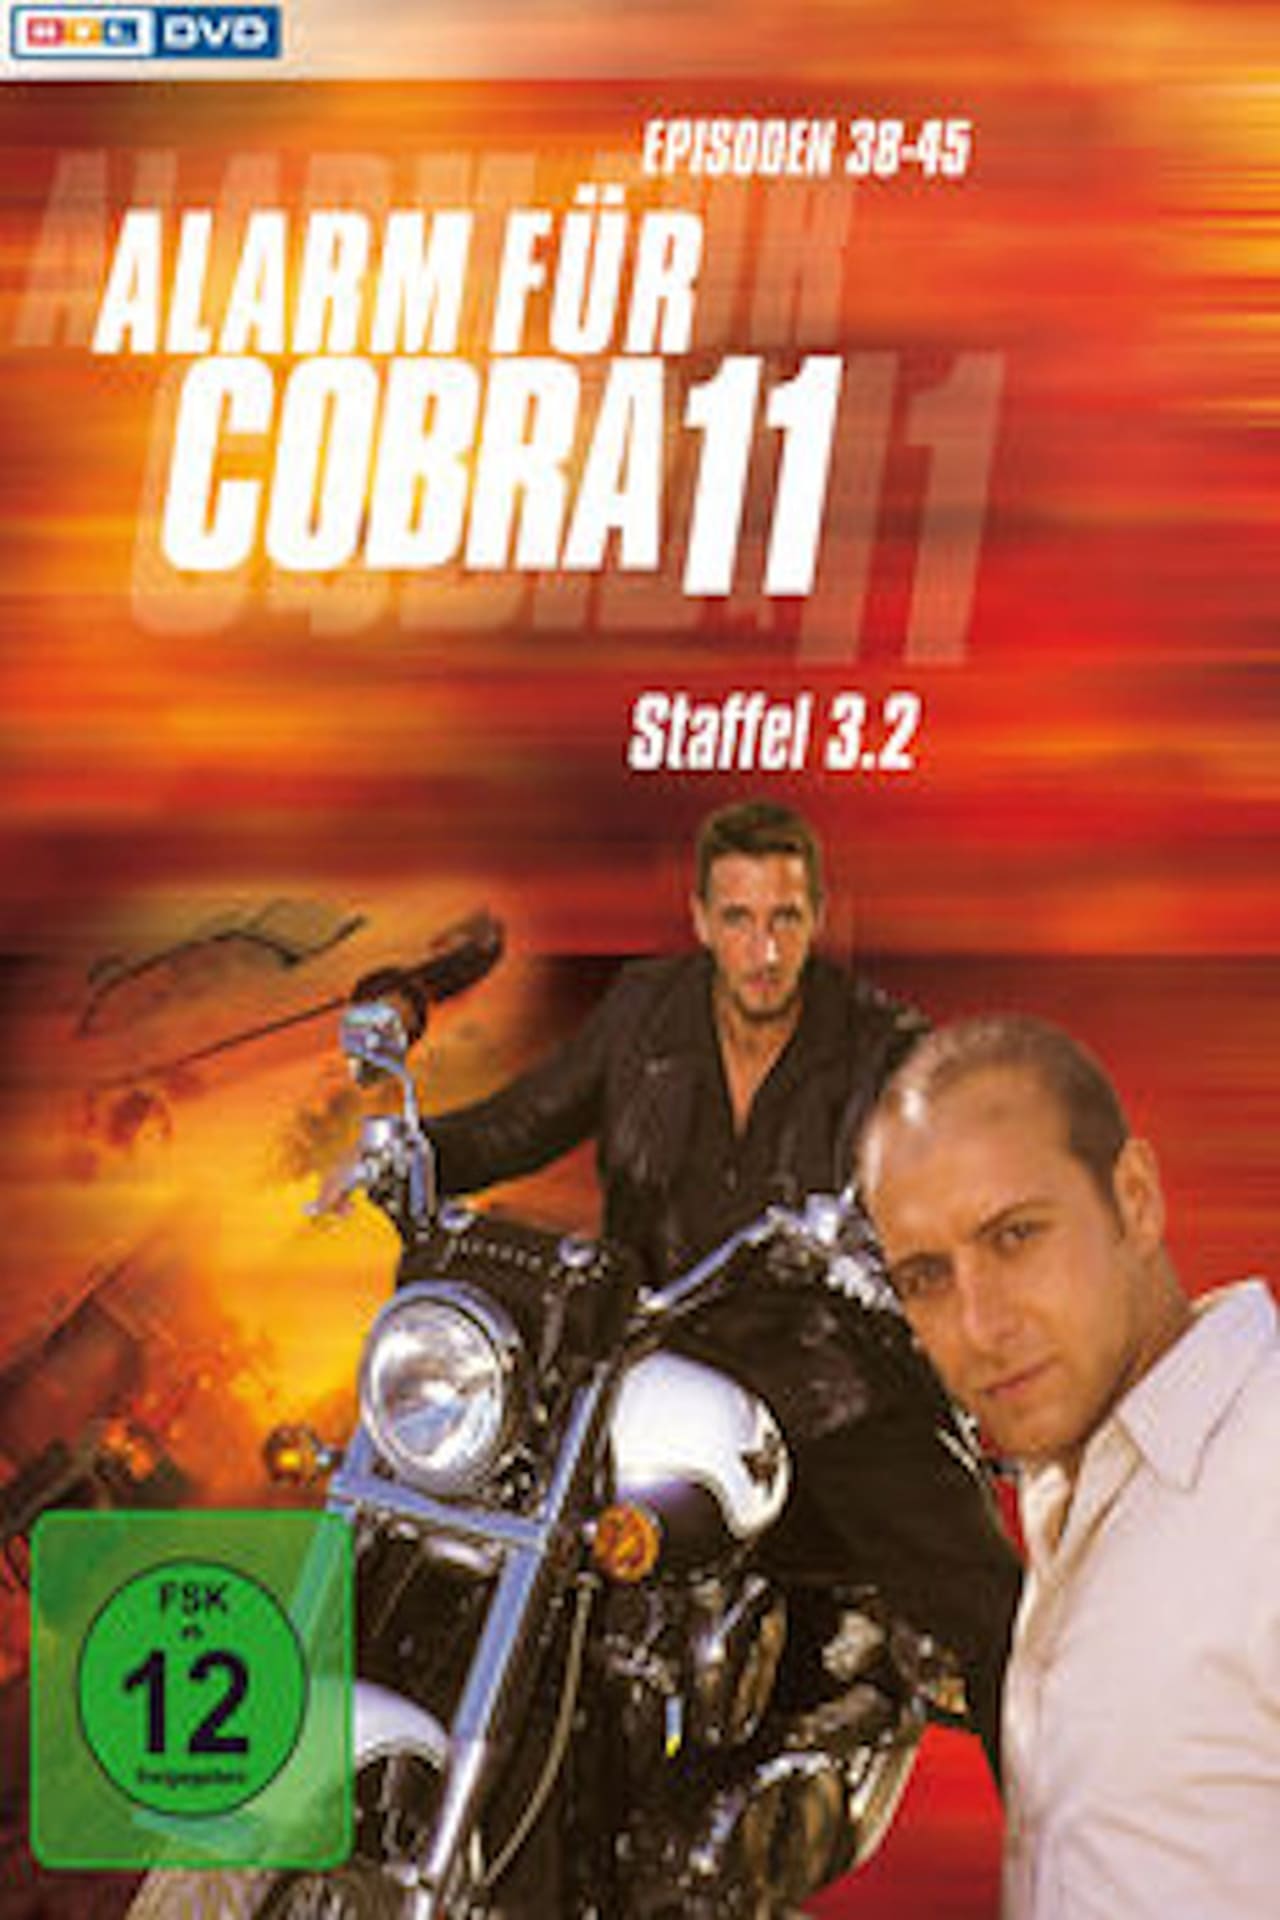 Alarm For Cobra 11: The Motorway Police (1999)